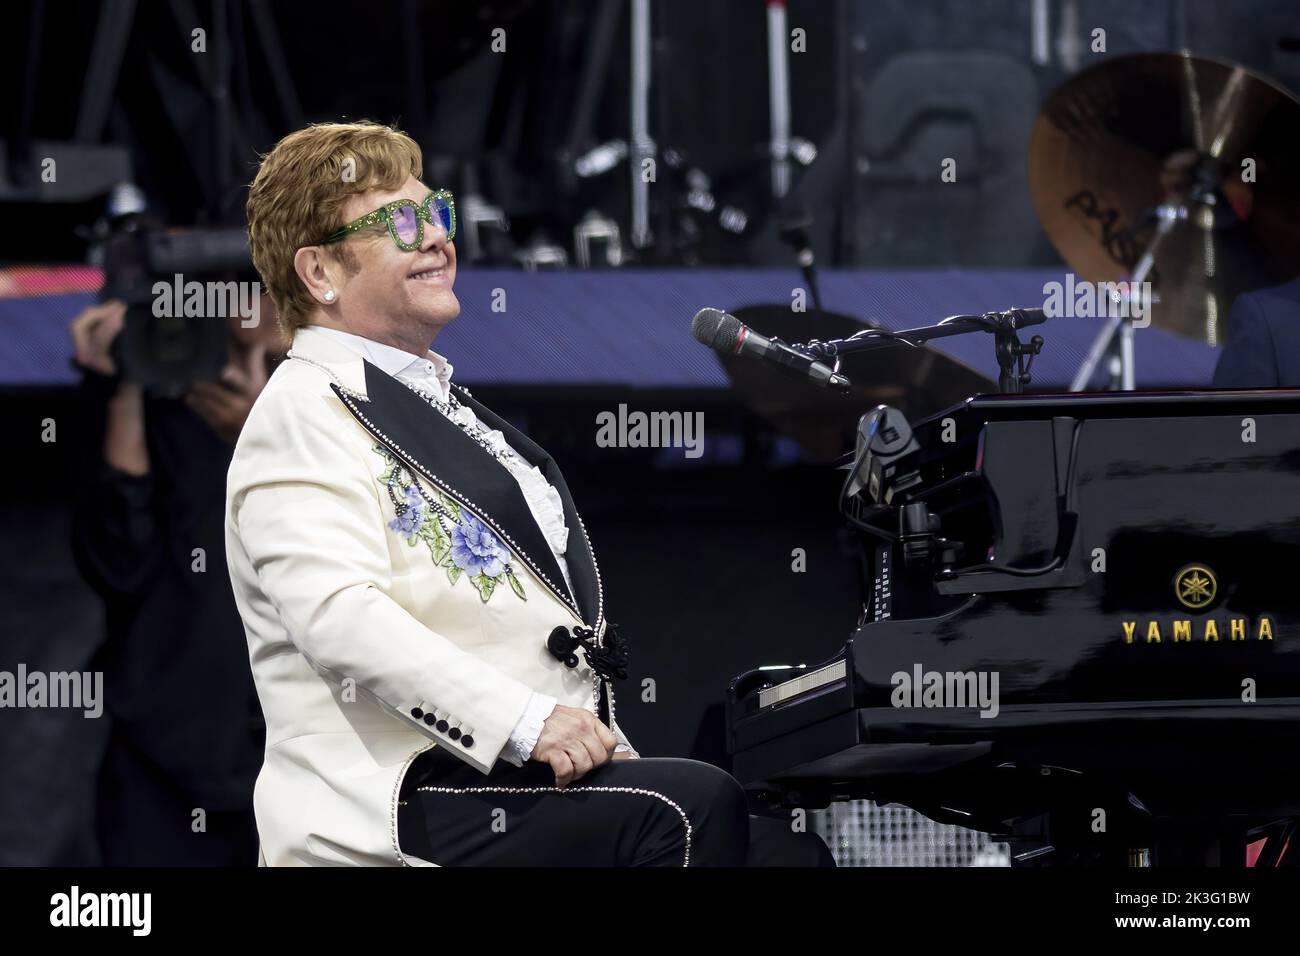 LONDRES, INGLATERRA: Elton John actúa en el Festival Británico de Verano durante su gira Farewell Yellow Brick Road en Hyde Park. Presentación: Elton John Dónde: Londres, Reino Unido Cuándo: 24 Jun 2022 Crédito: Neil Lupin/WENN Foto de stock